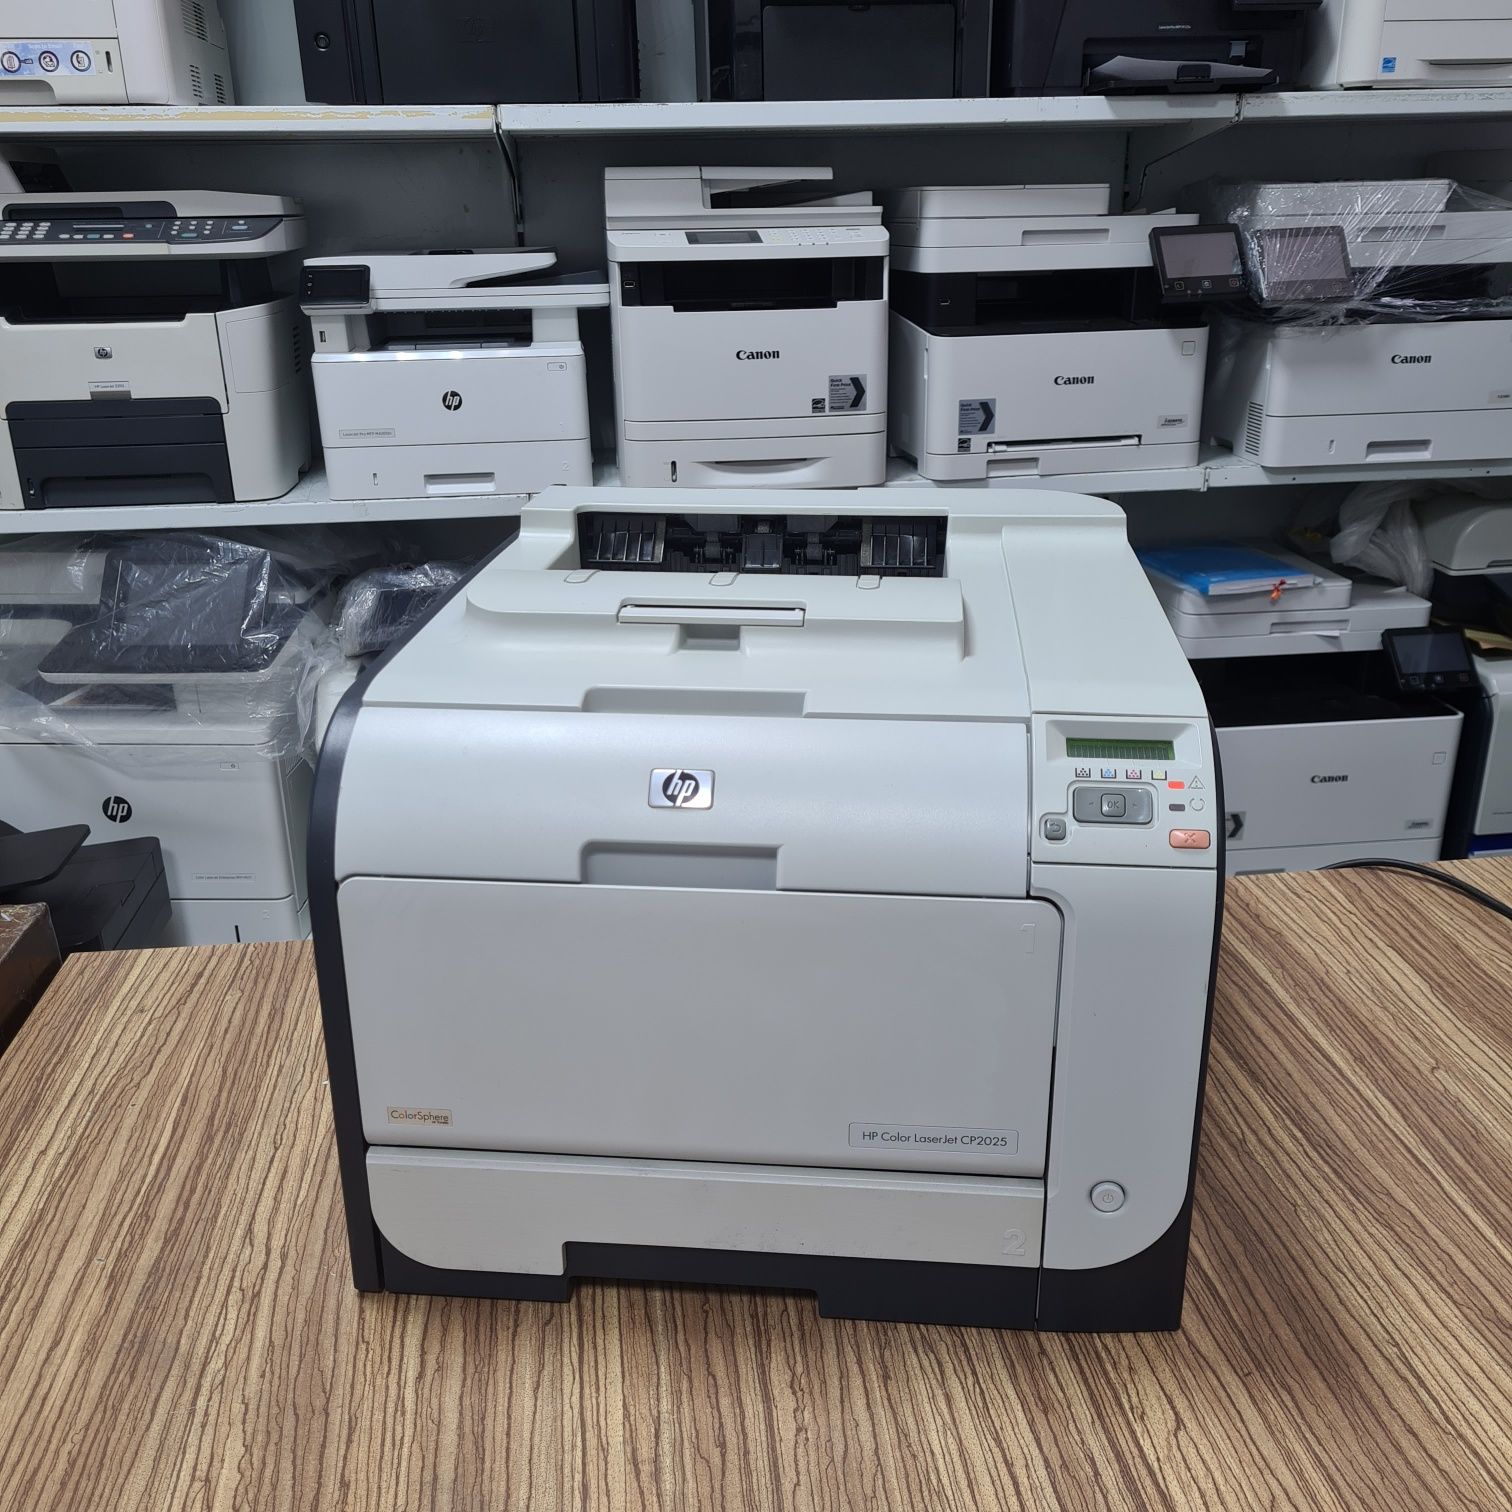 Цветной лазерный принтер HP Color CP2025 dn. ГАРАНТИЯ.